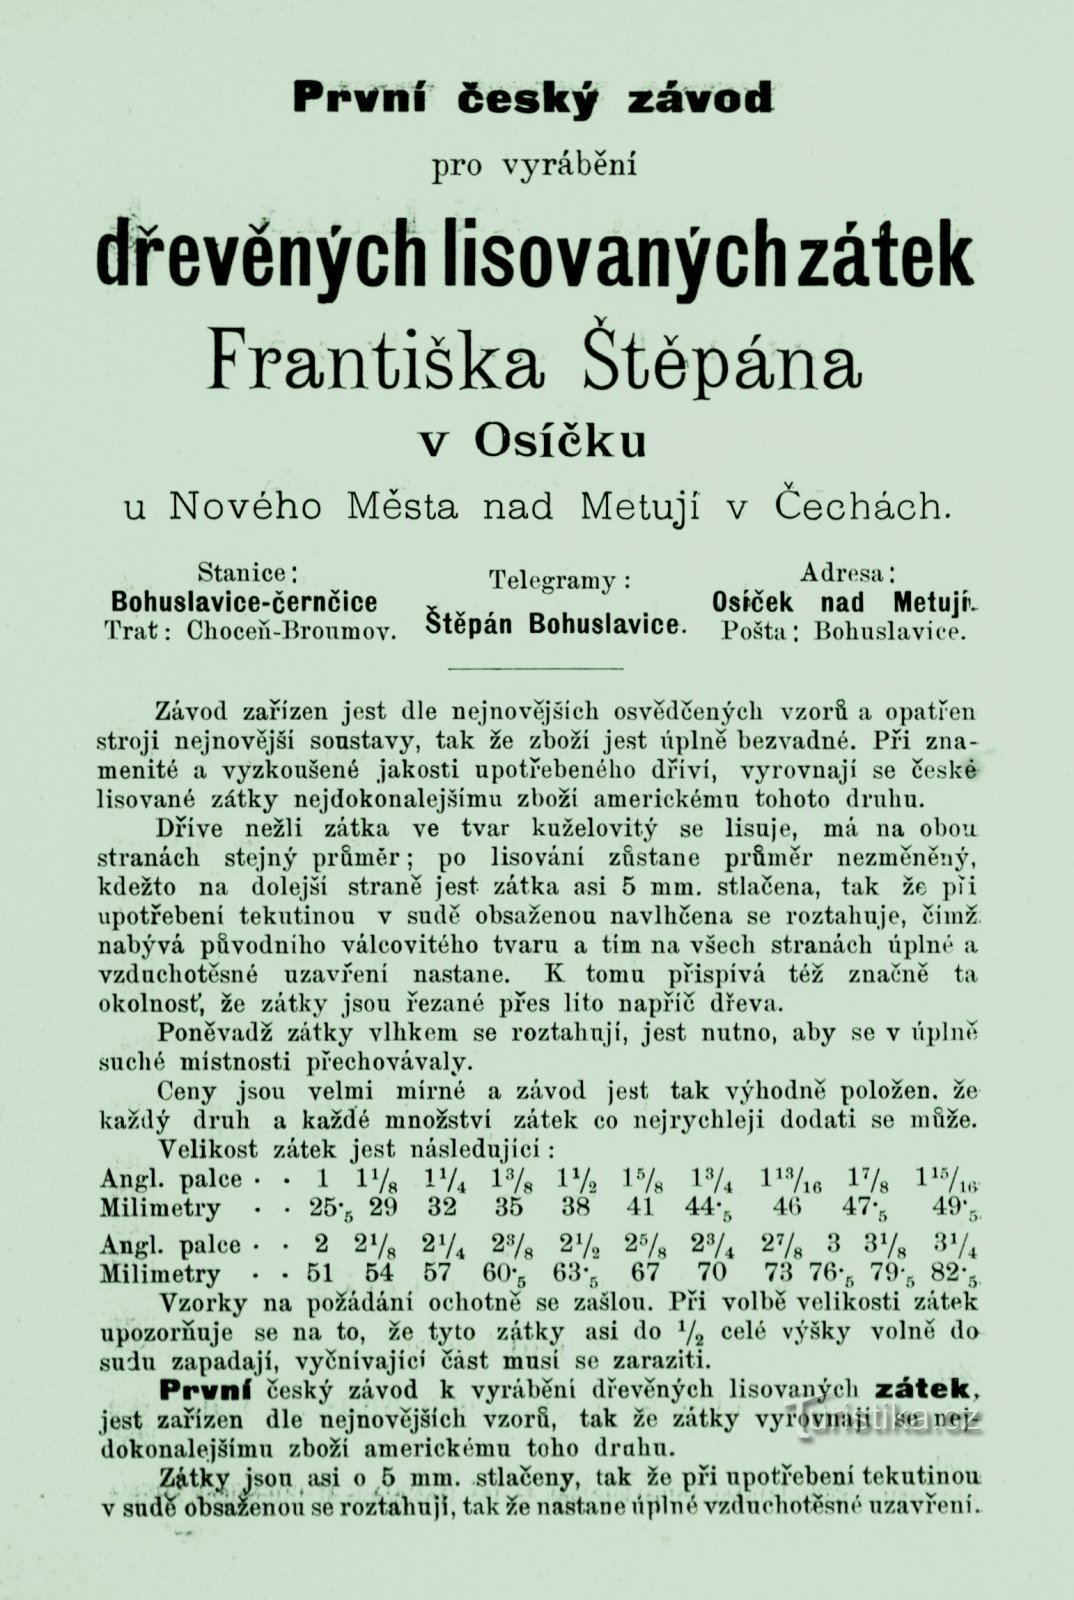 Periodeadvertentie van molenaar František Štěpán uit 1893